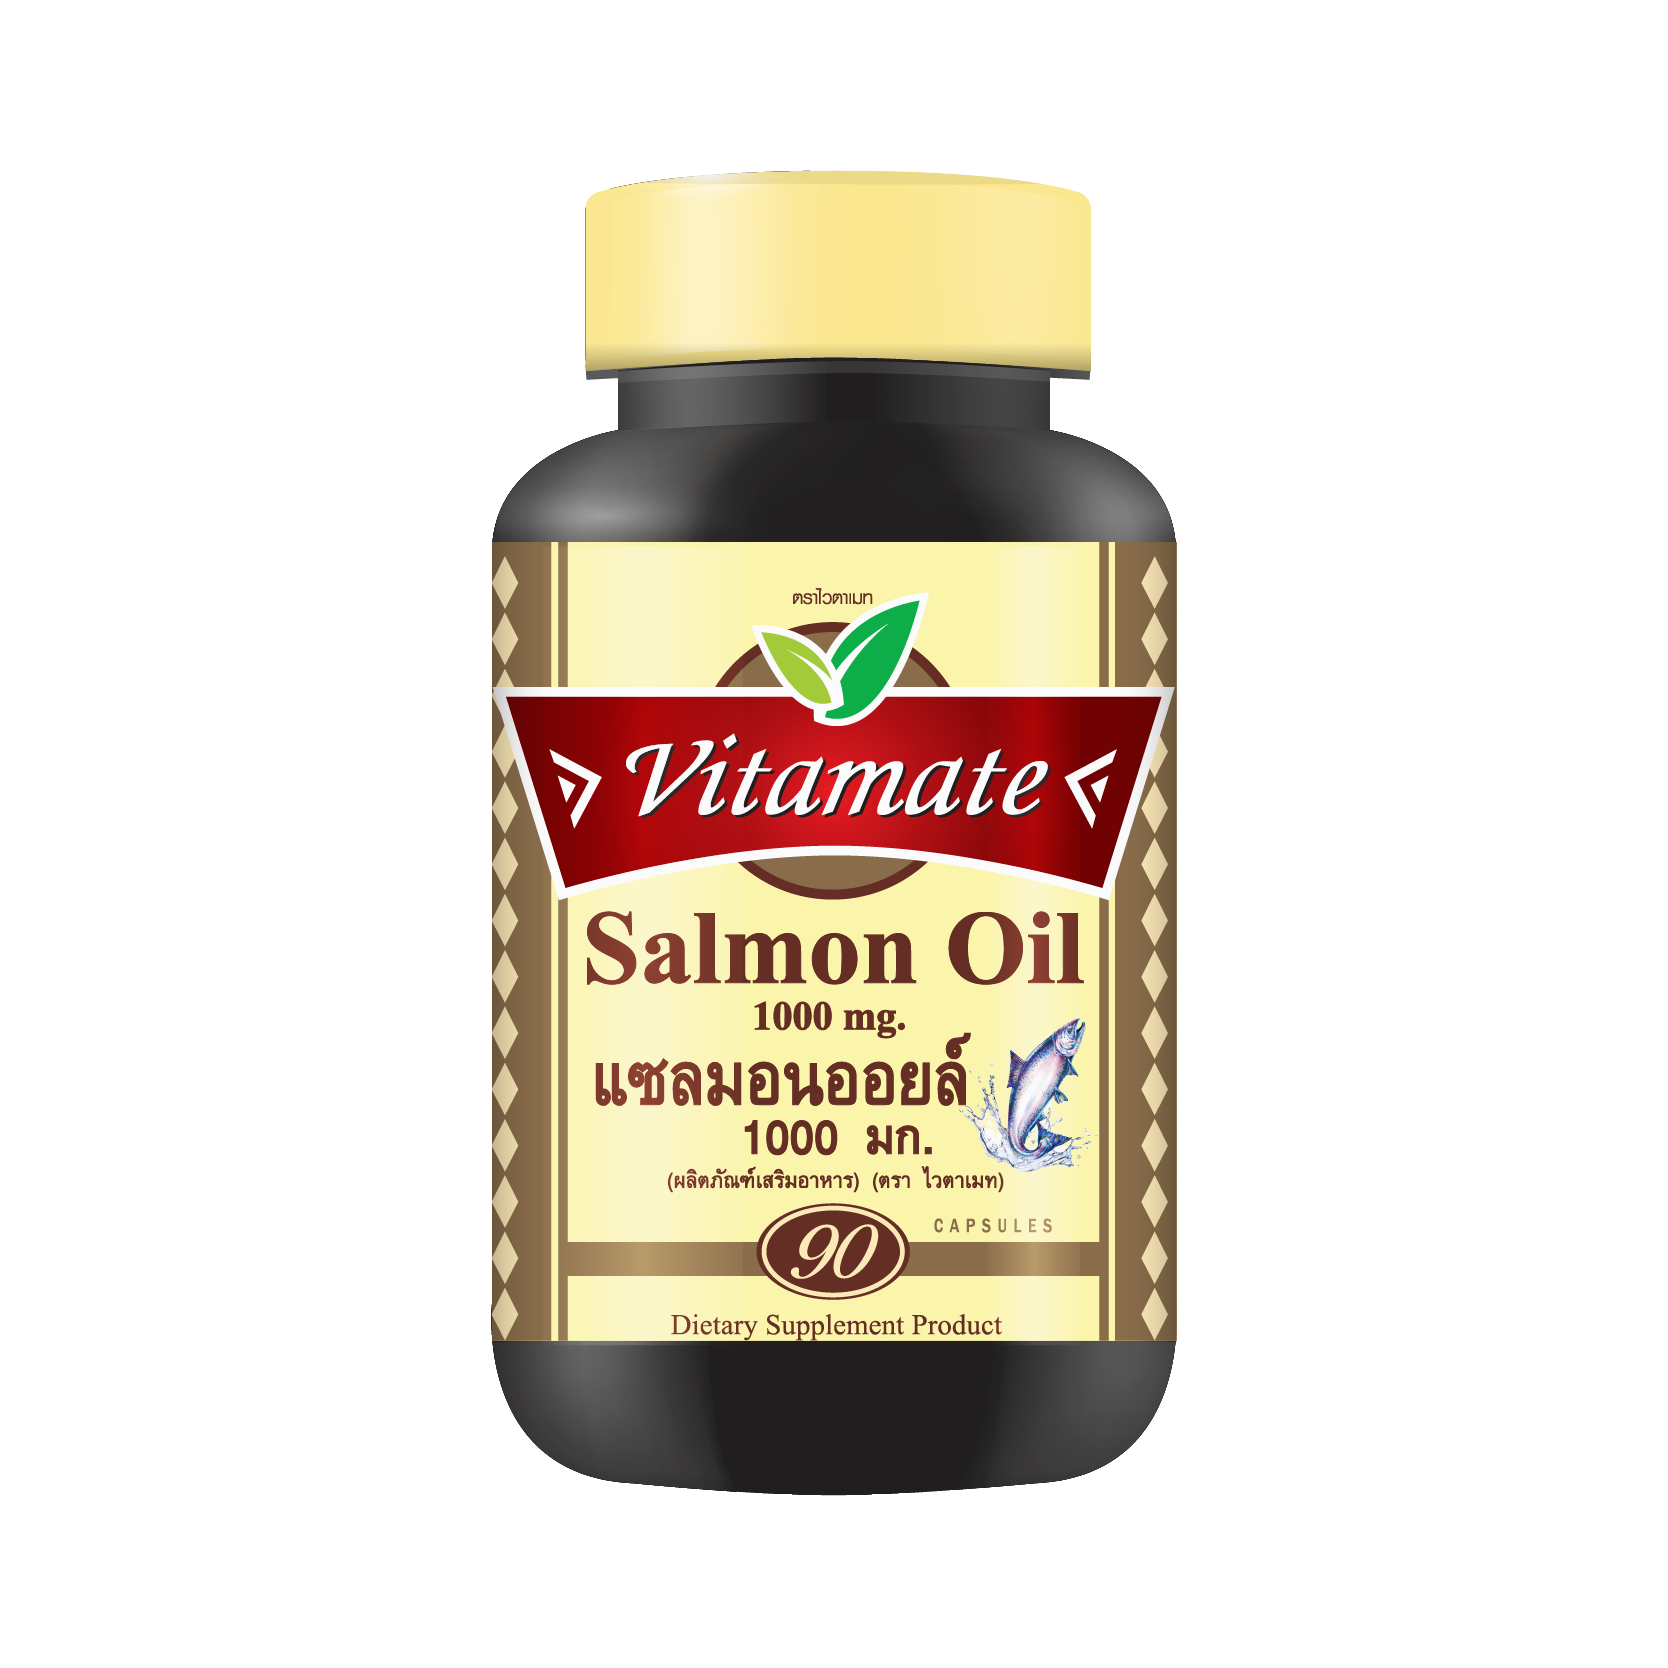 Vitamate Salmon Oil